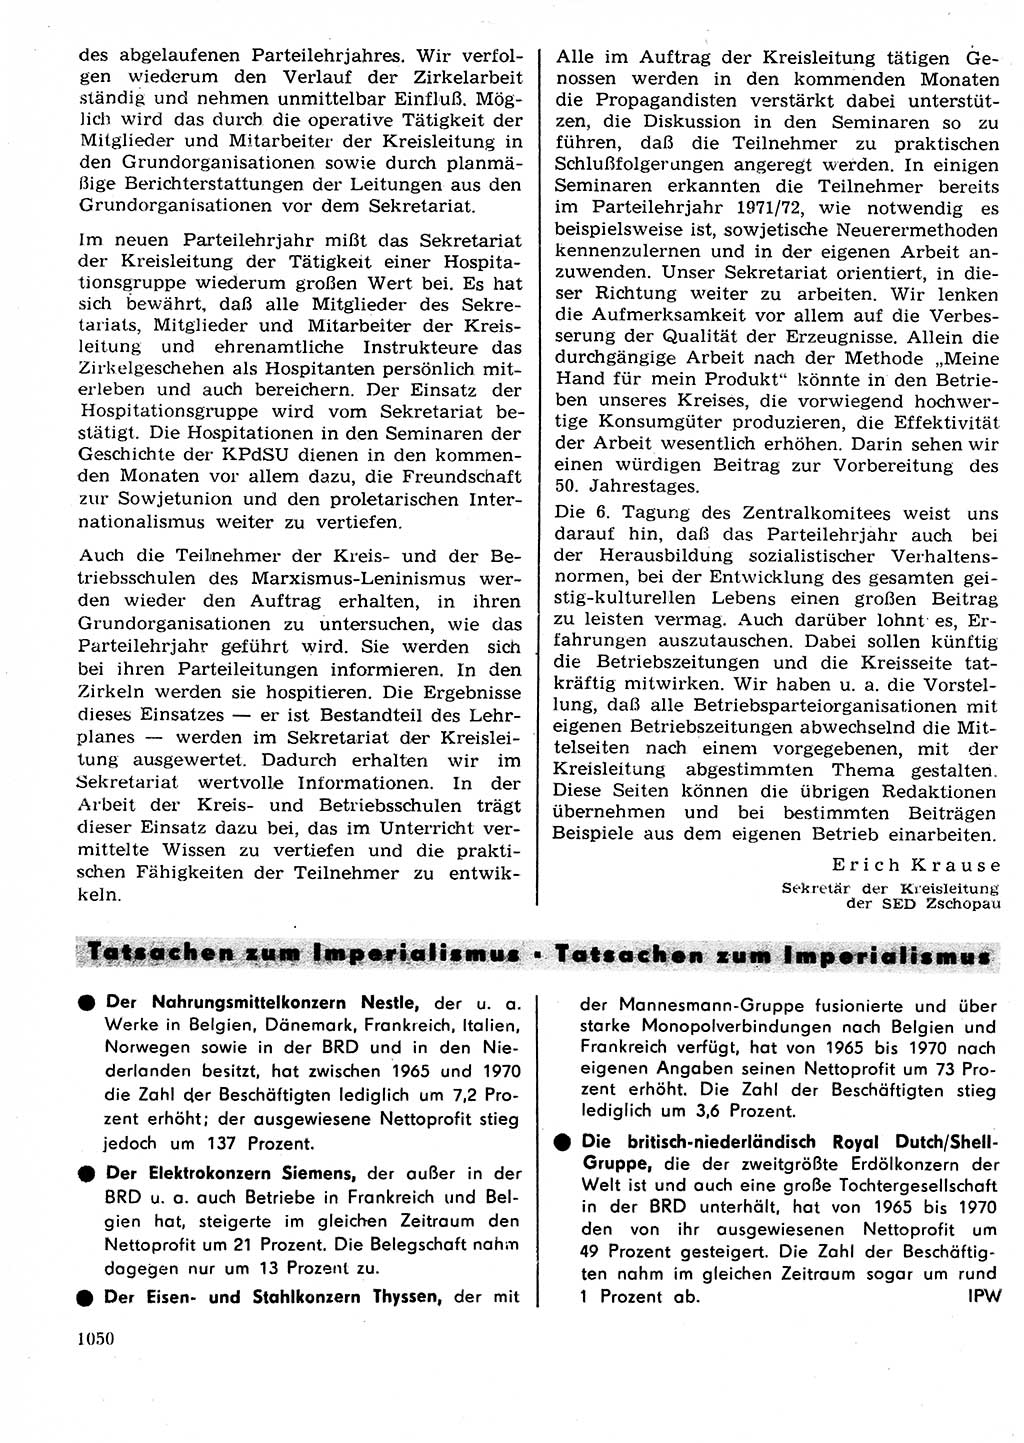 Neuer Weg (NW), Organ des Zentralkomitees (ZK) der SED (Sozialistische Einheitspartei Deutschlands) für Fragen des Parteilebens, 27. Jahrgang [Deutsche Demokratische Republik (DDR)] 1972, Seite 1050 (NW ZK SED DDR 1972, S. 1050)